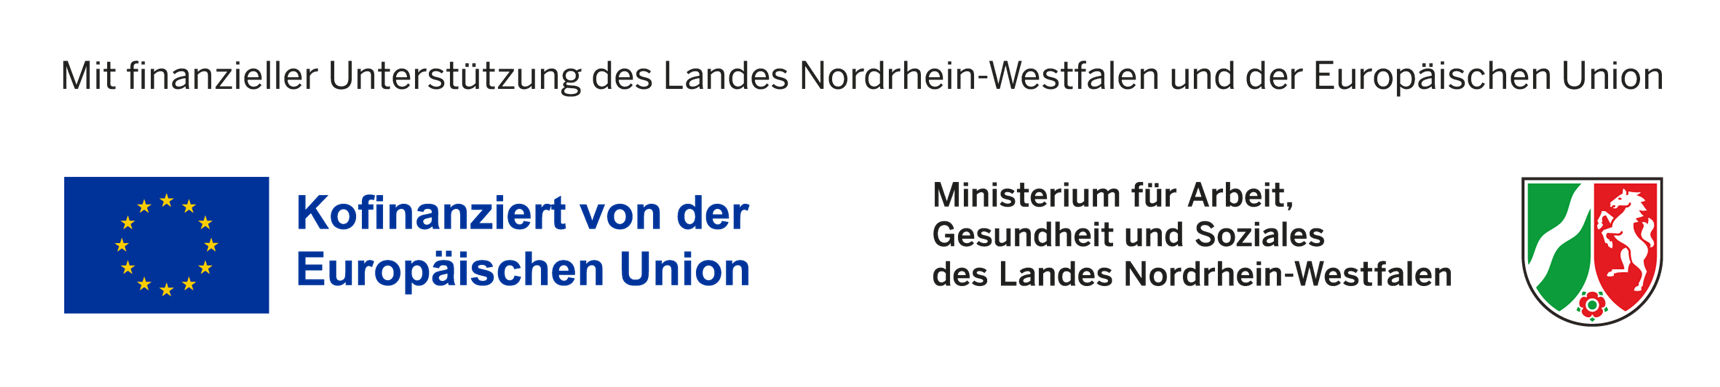 Logos Europäische Union und Ministerium Arbeit NRW